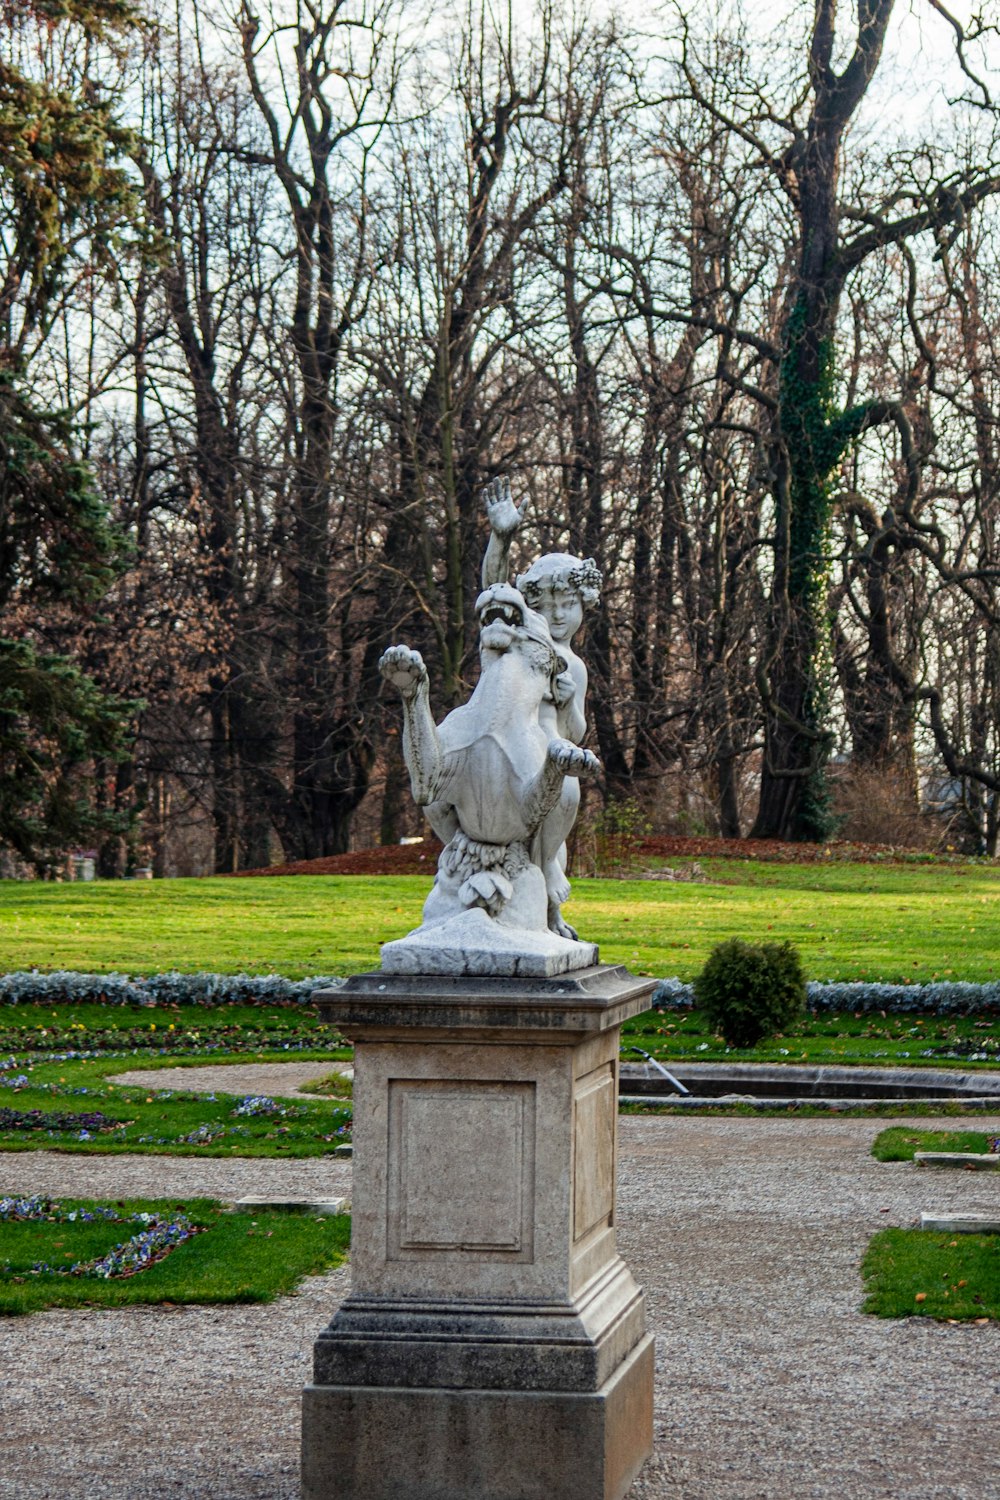 Una estatua de un hombre montando a caballo en un parque